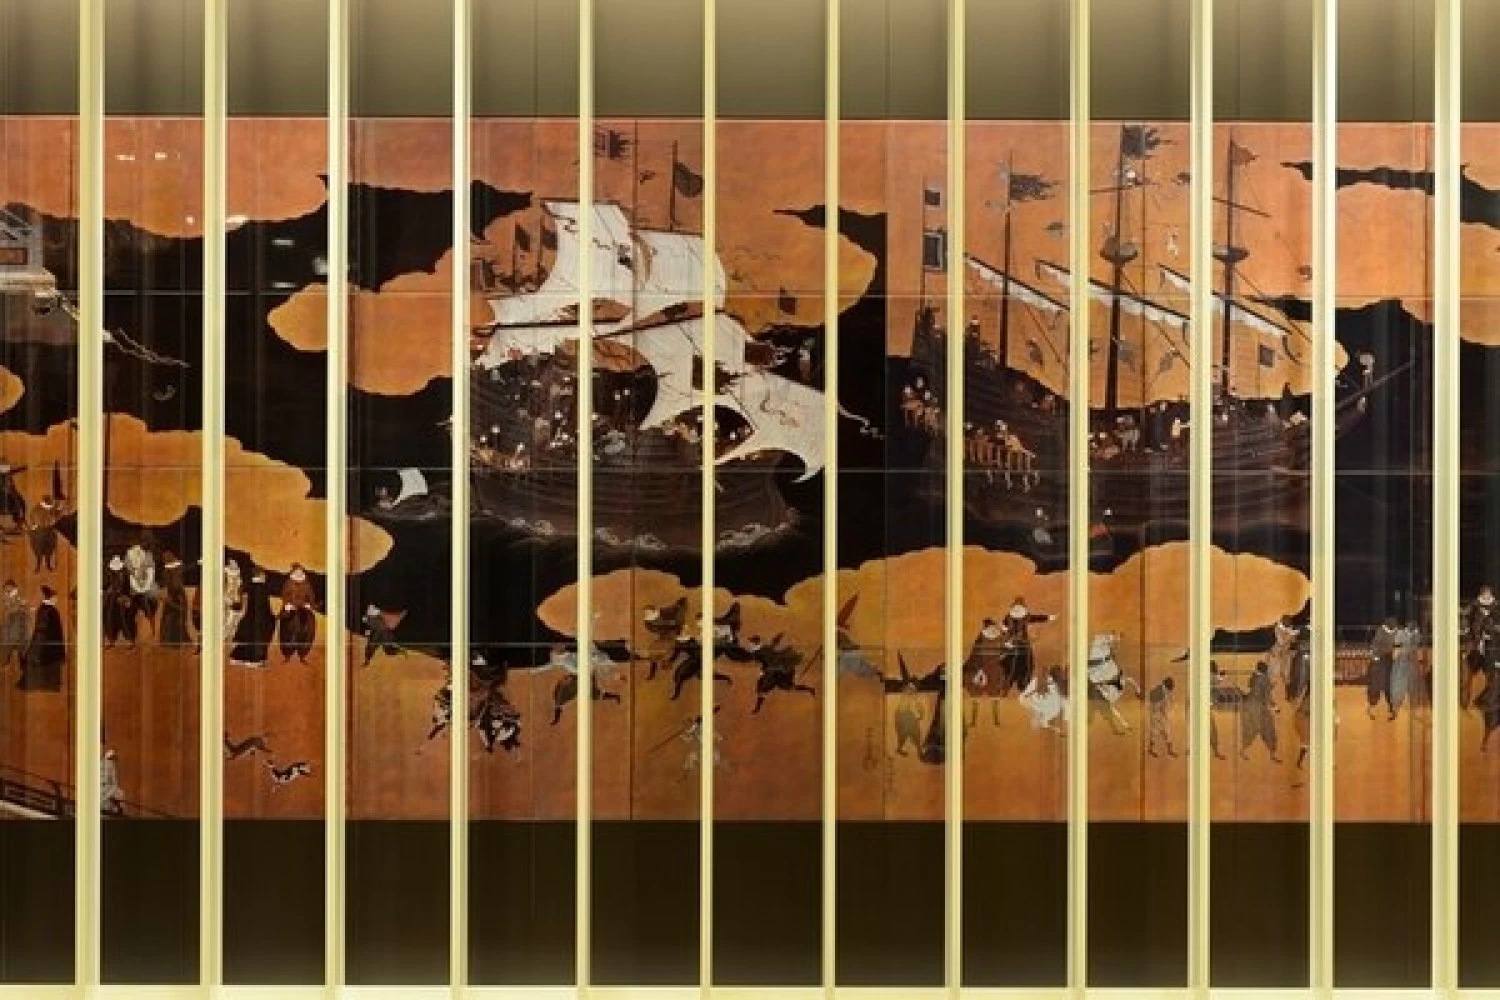 ロビー壁面にある、長崎を象徴するモチーフ「南蛮屏風」